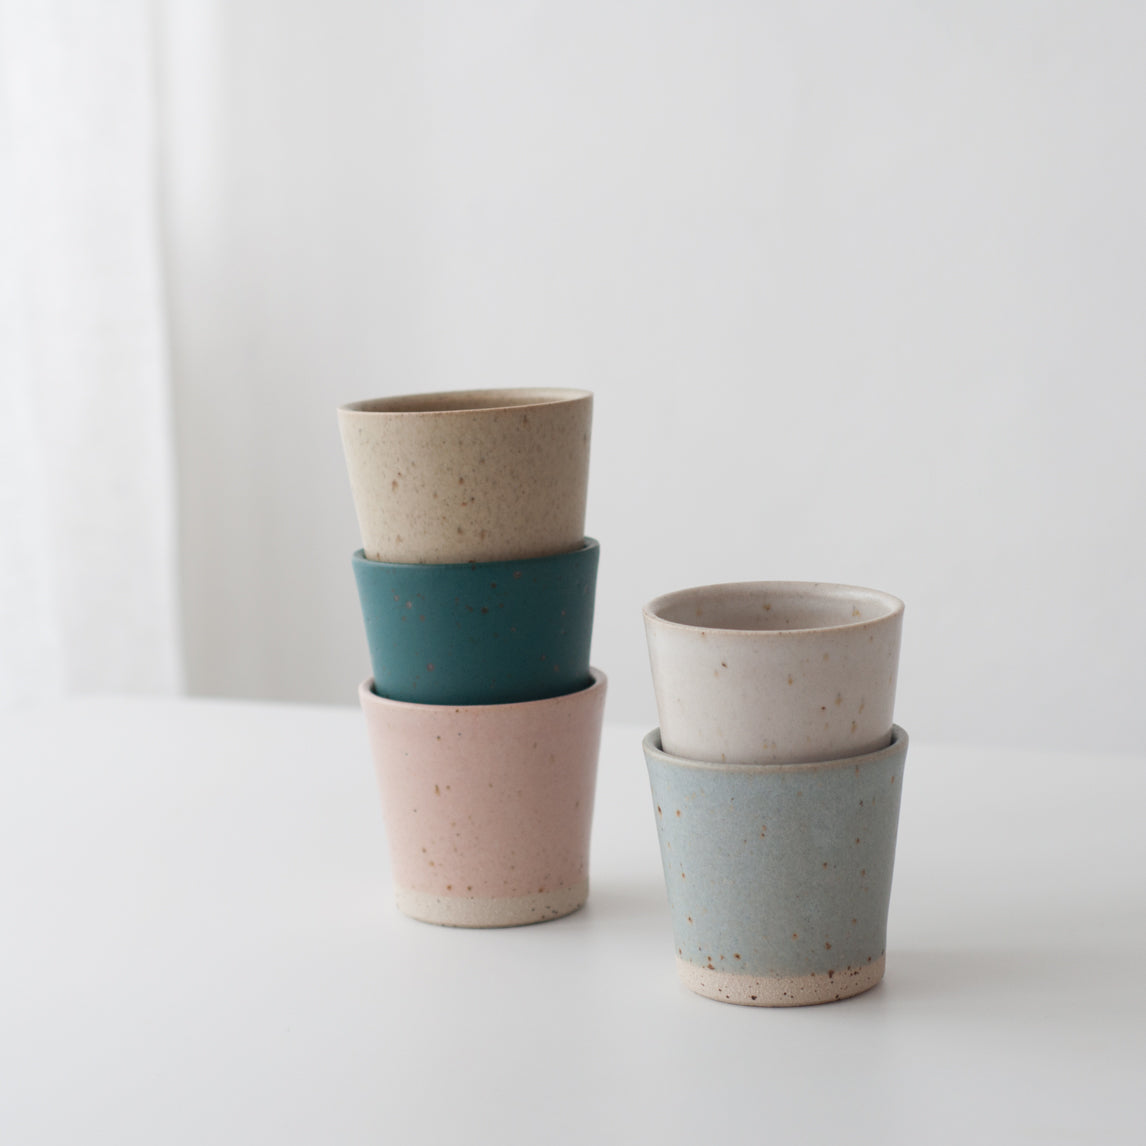 Green hand thrown ceramic beaker mug by Dor & Tan